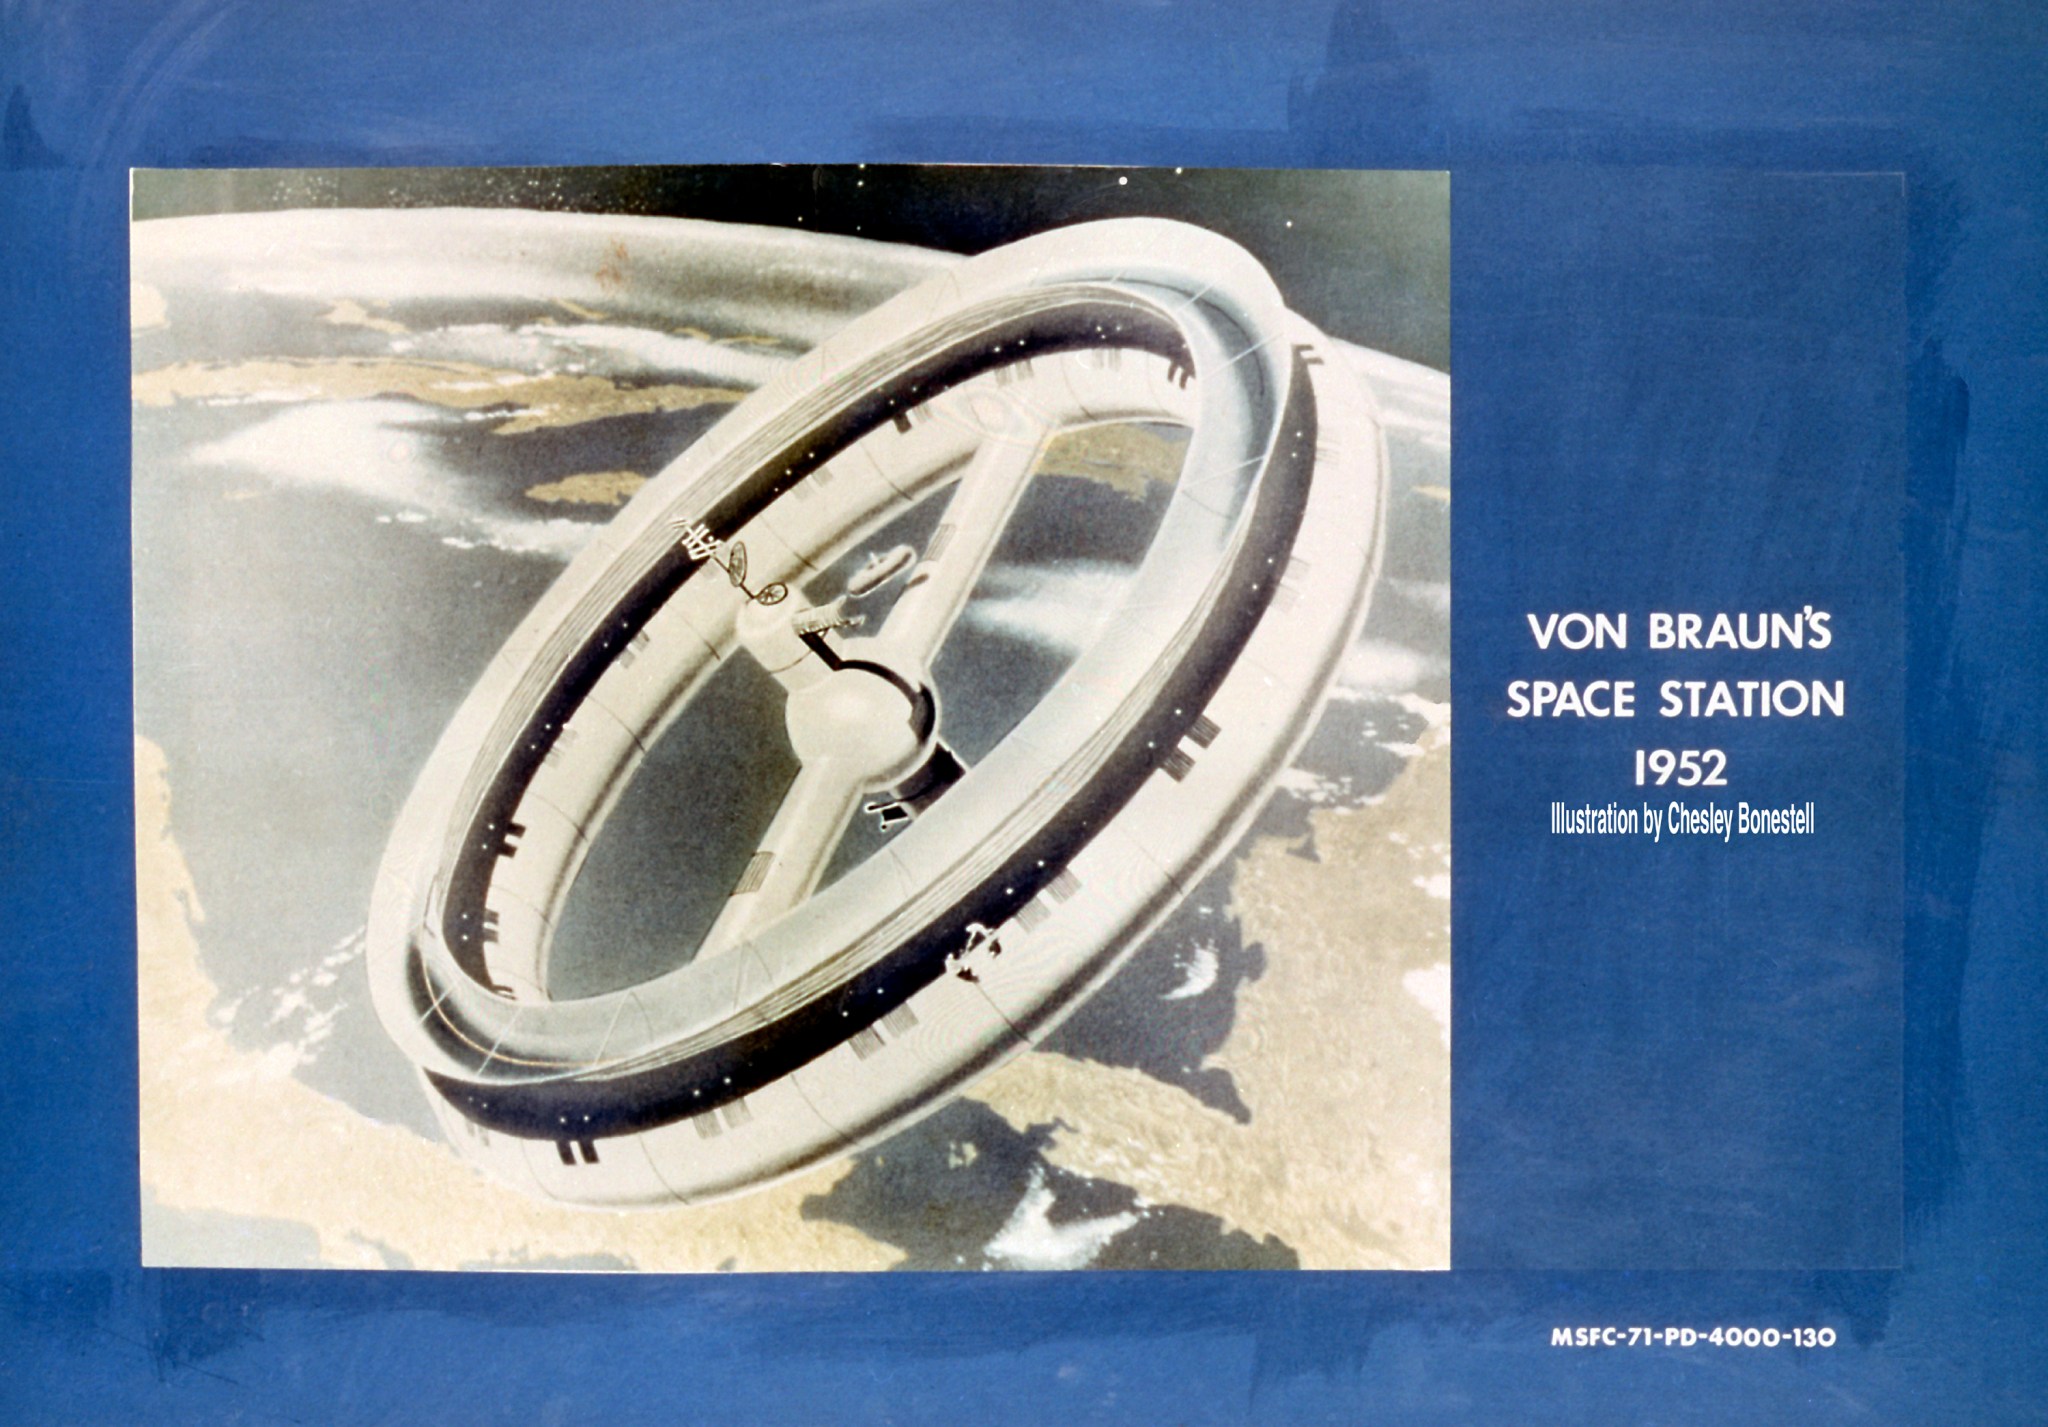 Dr. Wernher von Braun's early space station concept